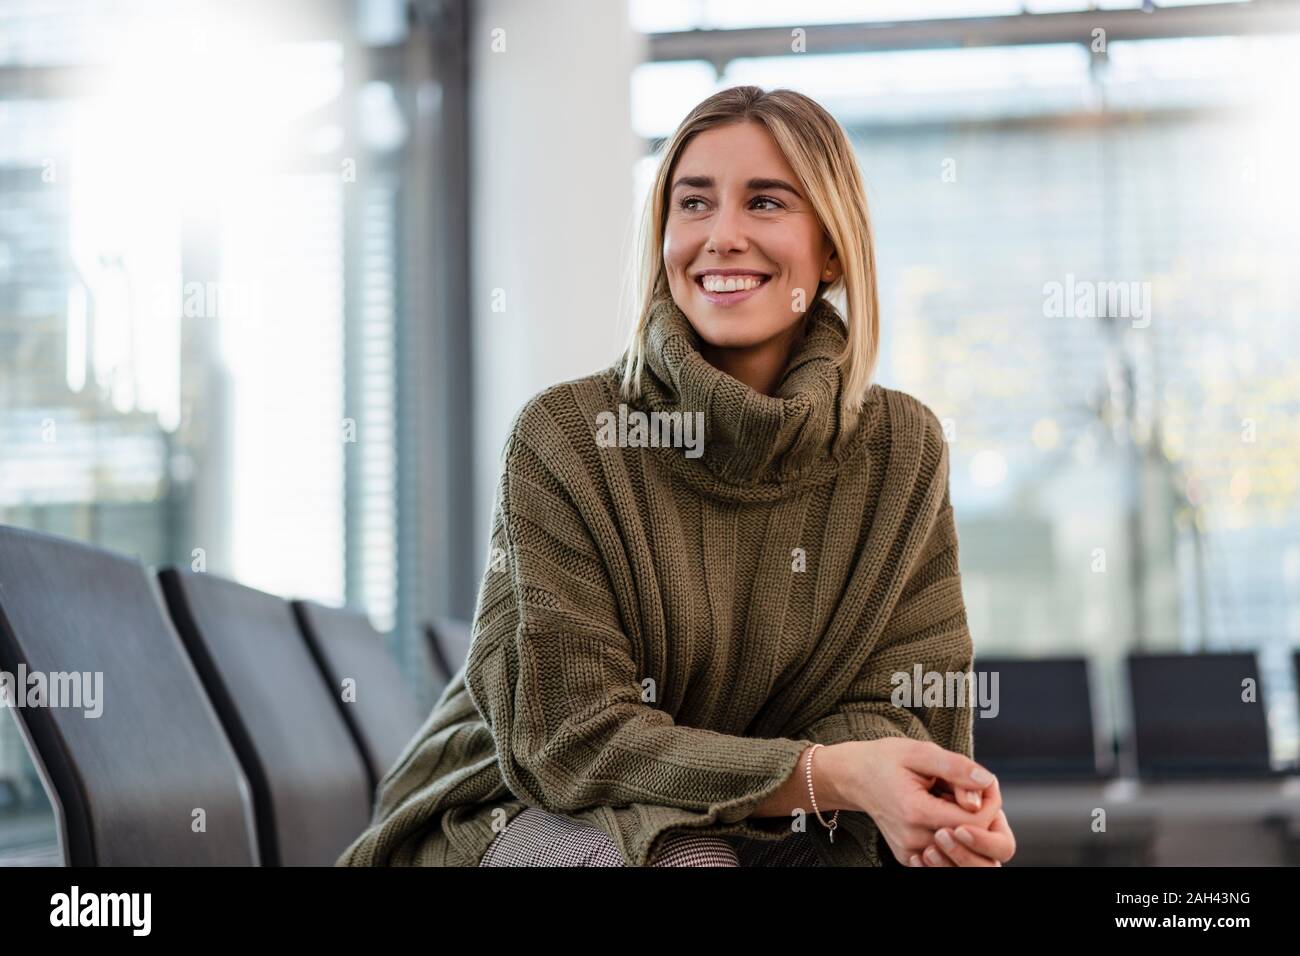 Lächelnde junge Frau sitzt im Wartebereich um suchen Stockfoto